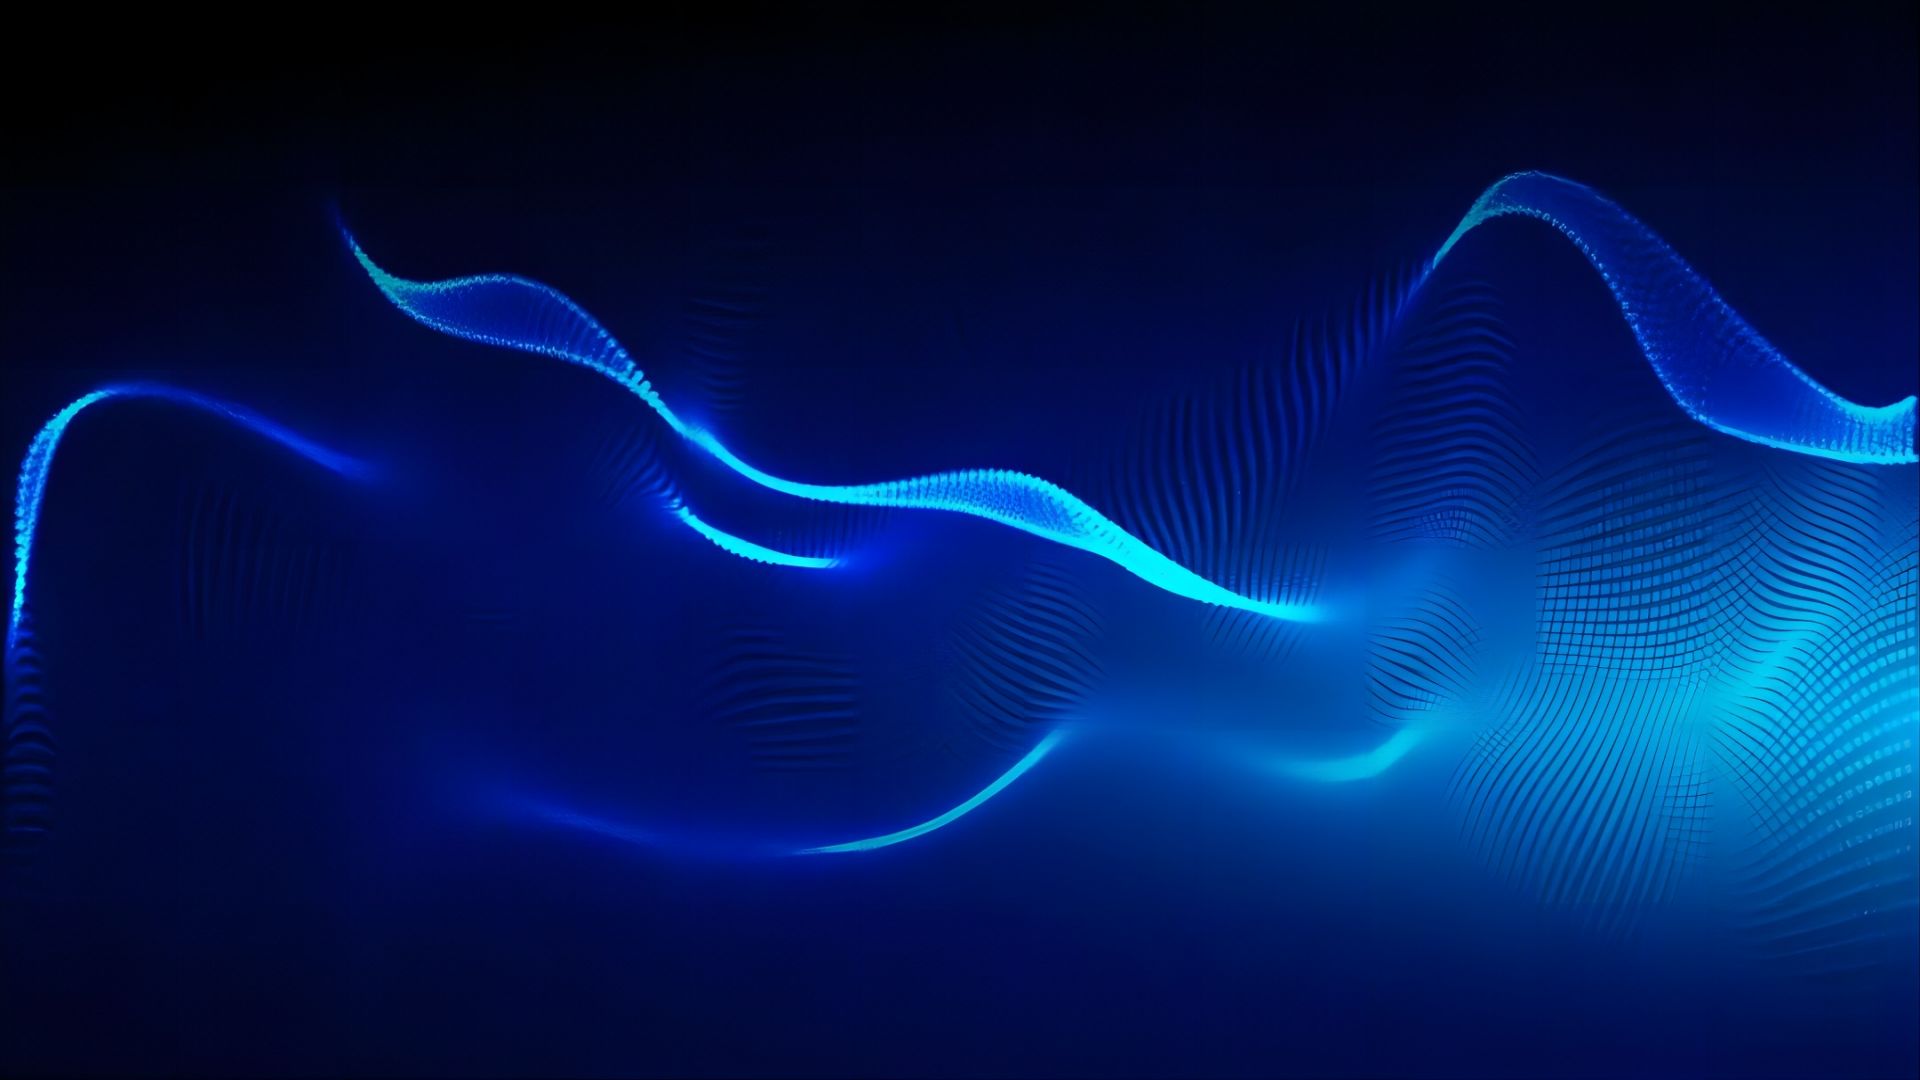 这是一张抽象图像，展现了蓝色光线在深蓝色背景上形成的波浪状图案，给人一种科技感和未来感。